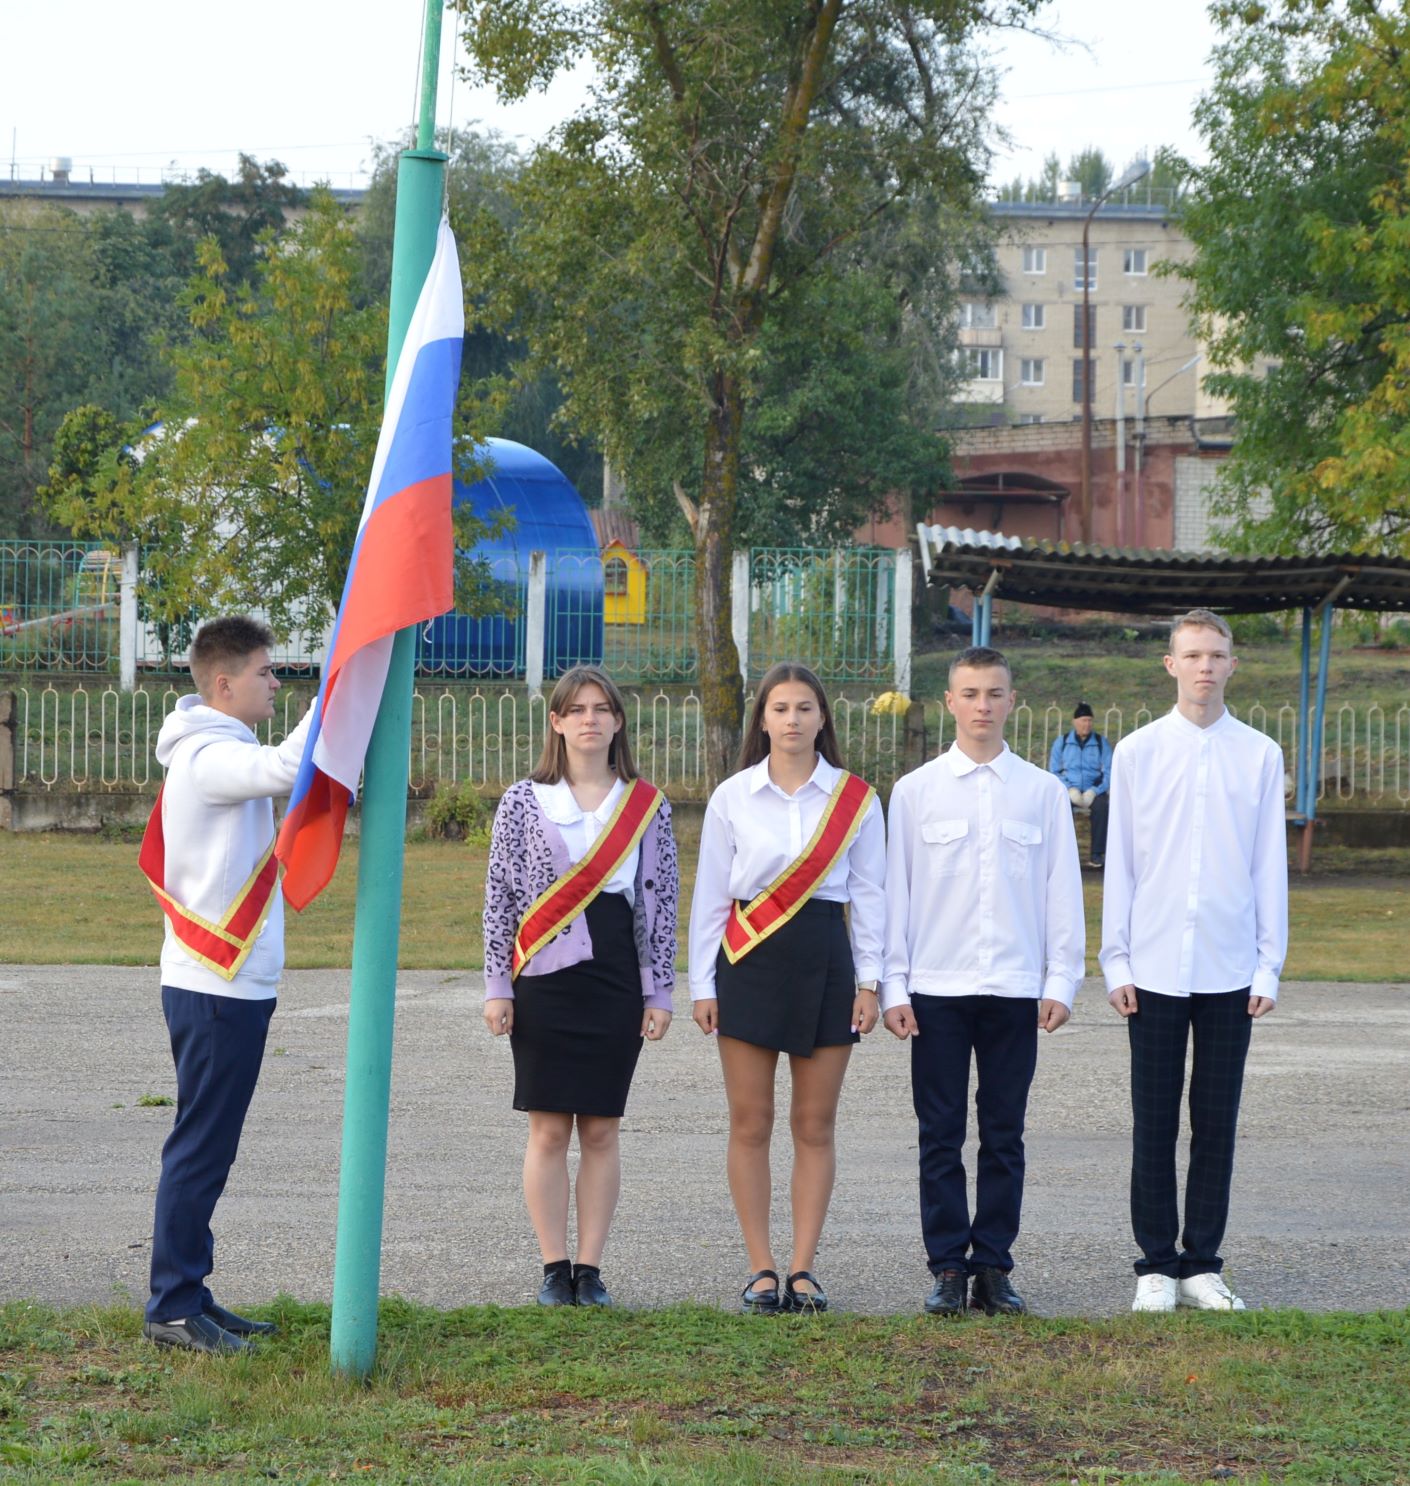 Первая учебная неделя  в шиханской школе началась  с исполнения гимна и  поднятия Государственного флага.